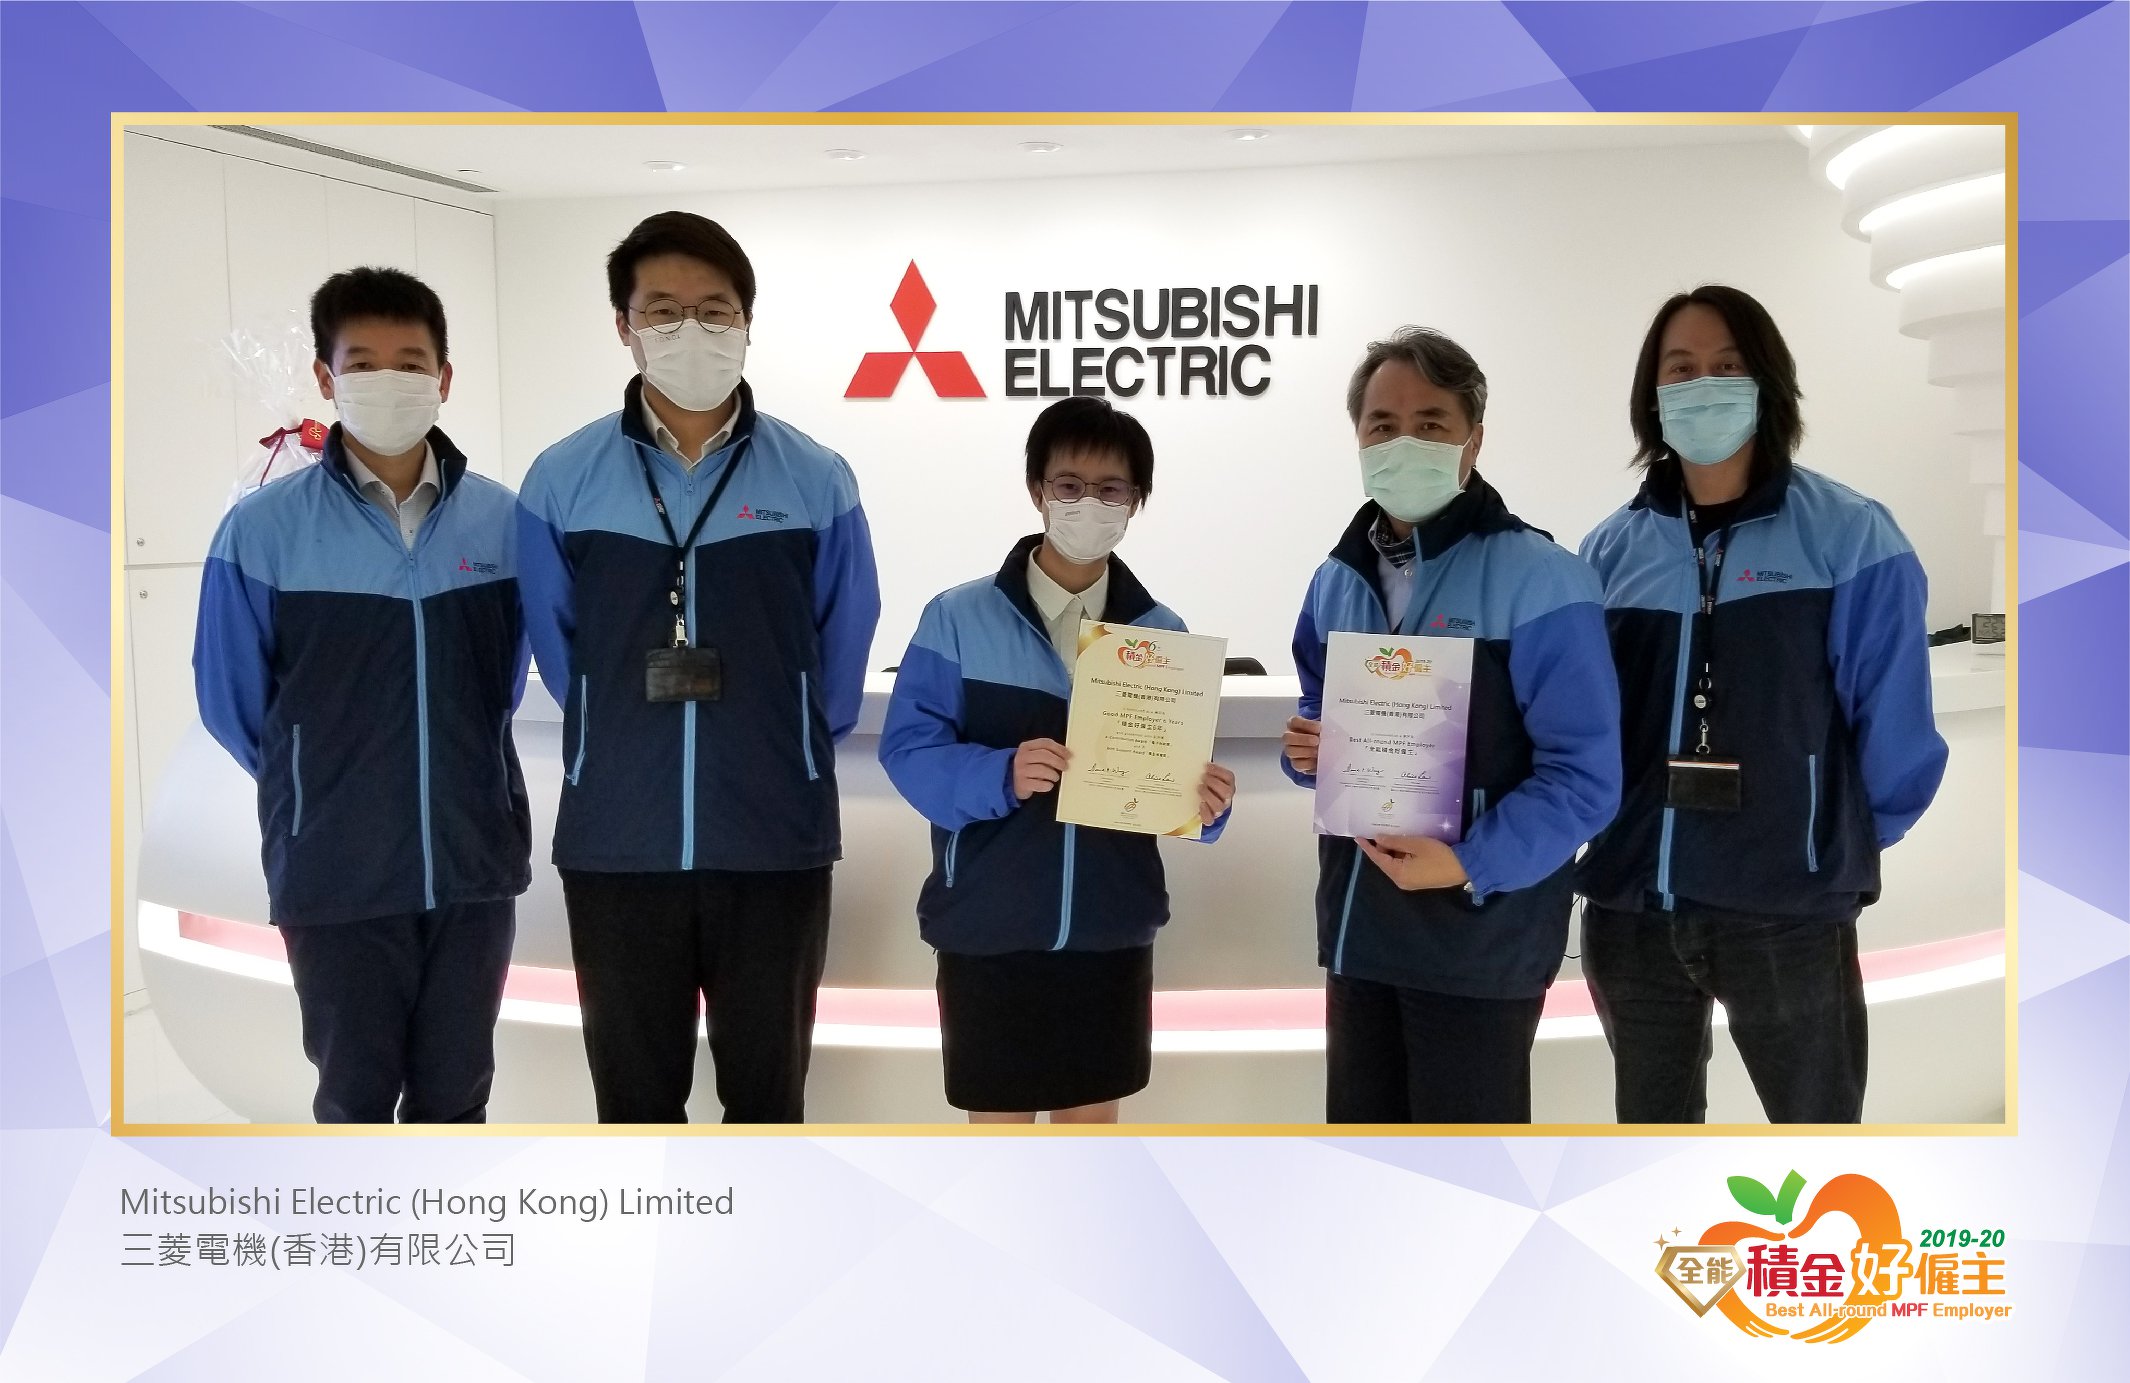 Mitsubishi Electric (Hong Kong) Limited 三菱電機(香港)有限公司